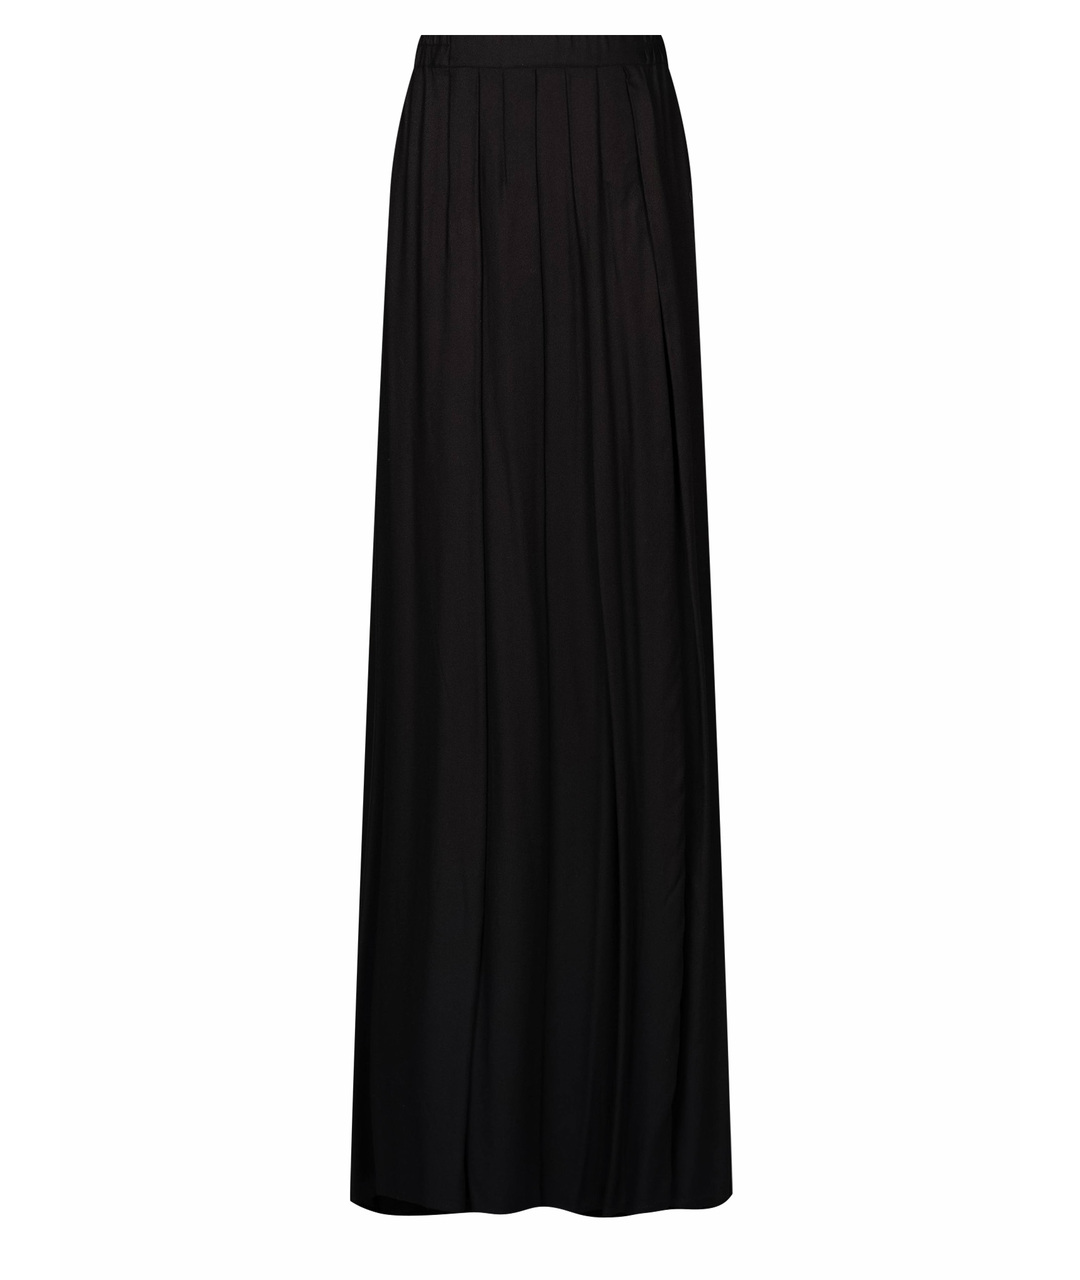 ANN DEMEULEMEESTER Черная вискозная юбка макси, фото 1